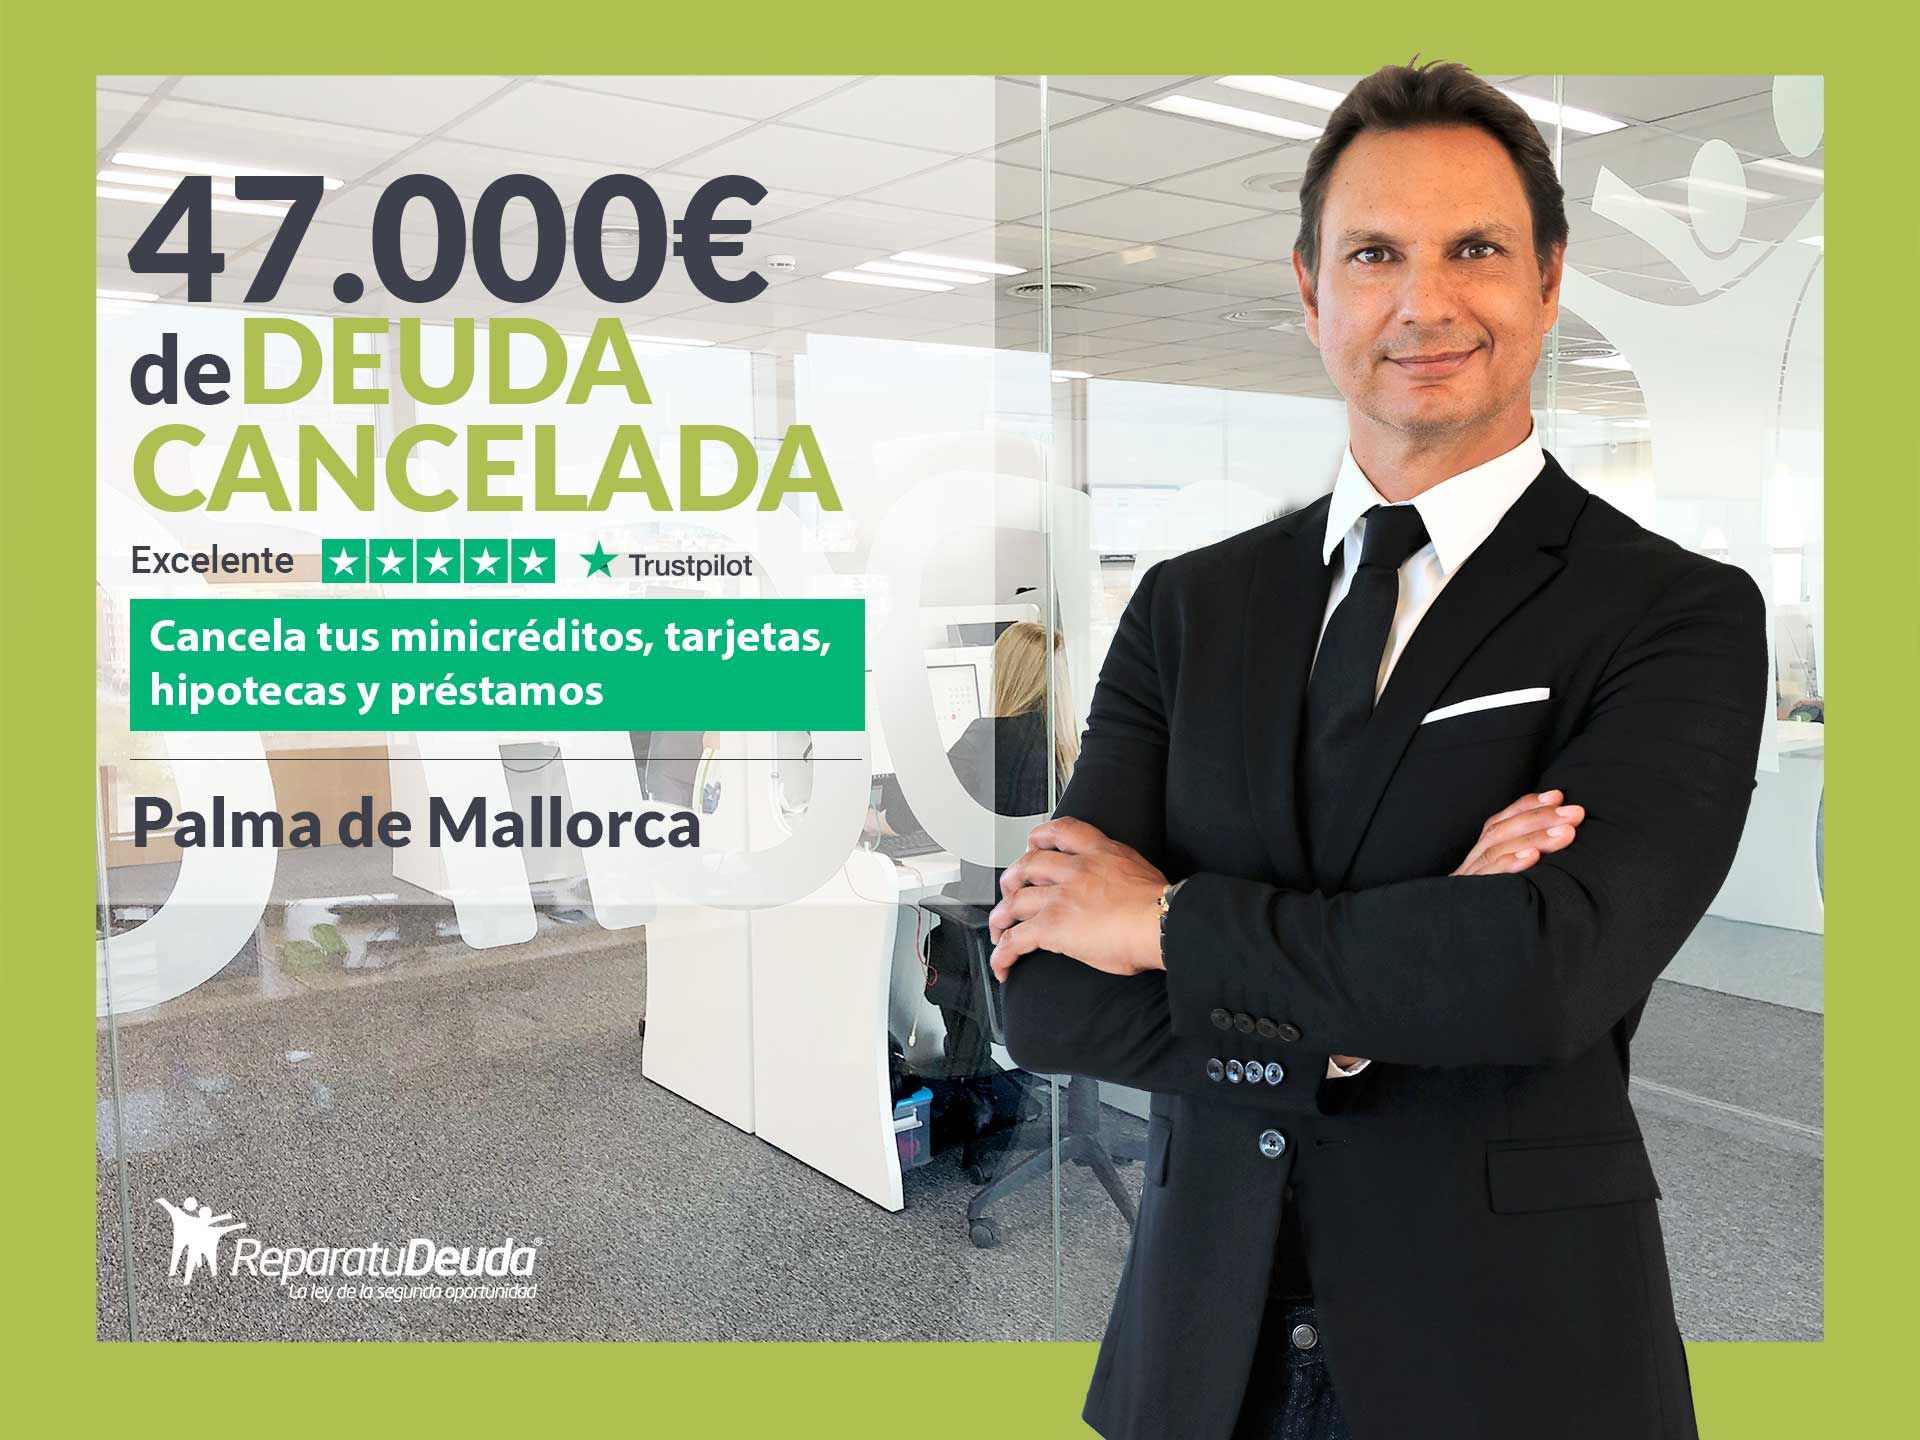 Repara tu Deuda cancela 47.000? en Palma de Mallorca (Baleares) gracias a la Ley de Segunda Oportunidad